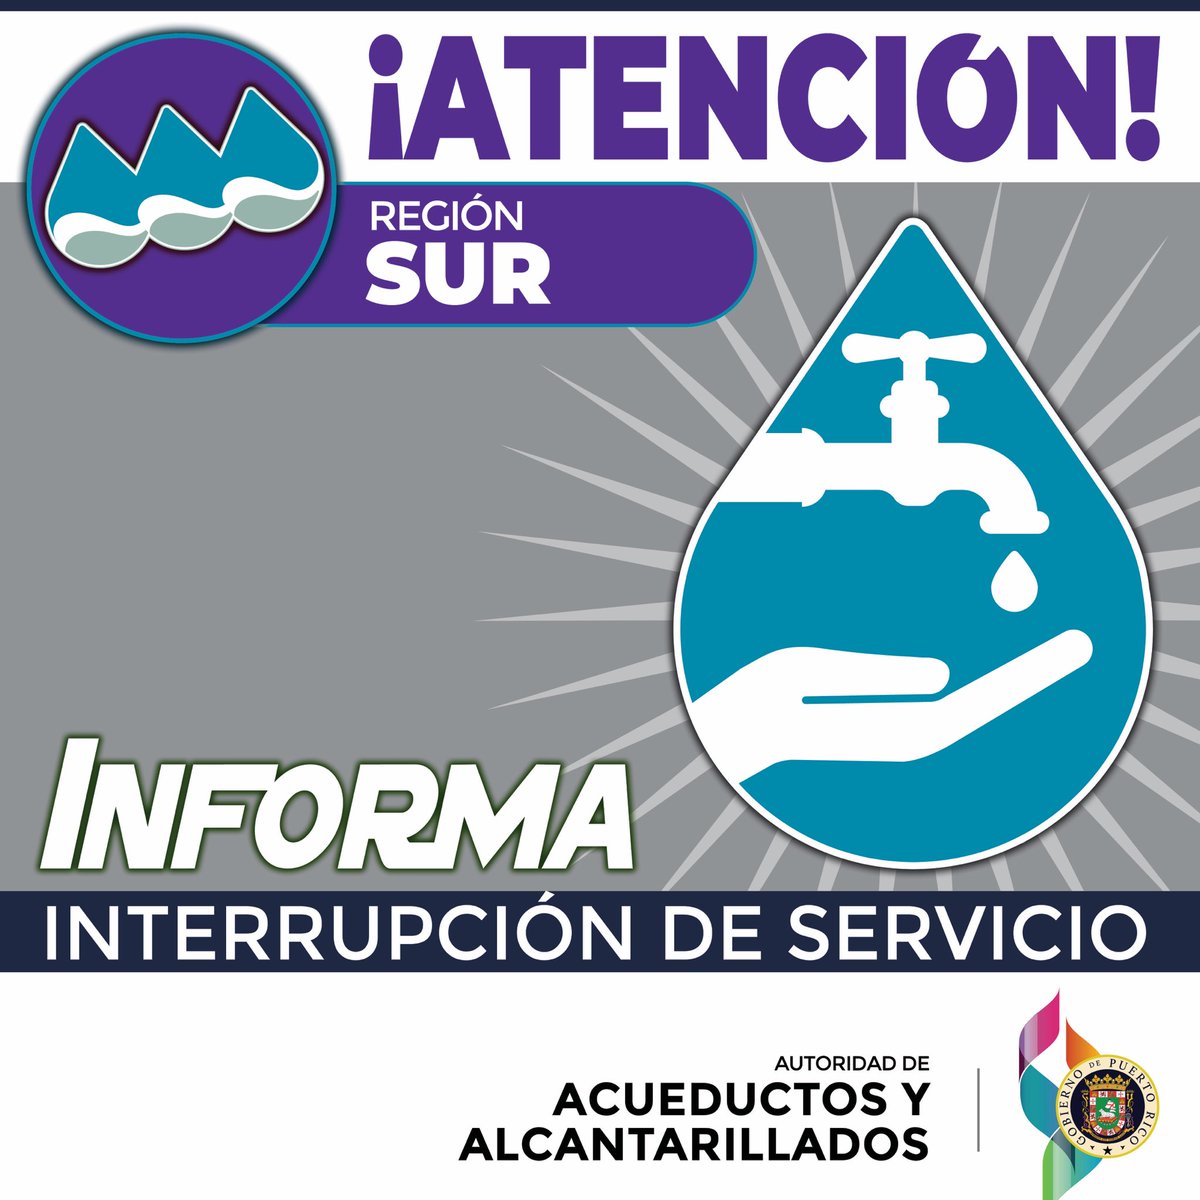 [Atención] La planta de filtros Jagua Pasto en Guayanilla está fuera de operación por alta turbidez, como consecuencia de las lluvias registradas. Clientes del área experimentan desde bajas presiones hasta interrupción del servicio de agua potable.